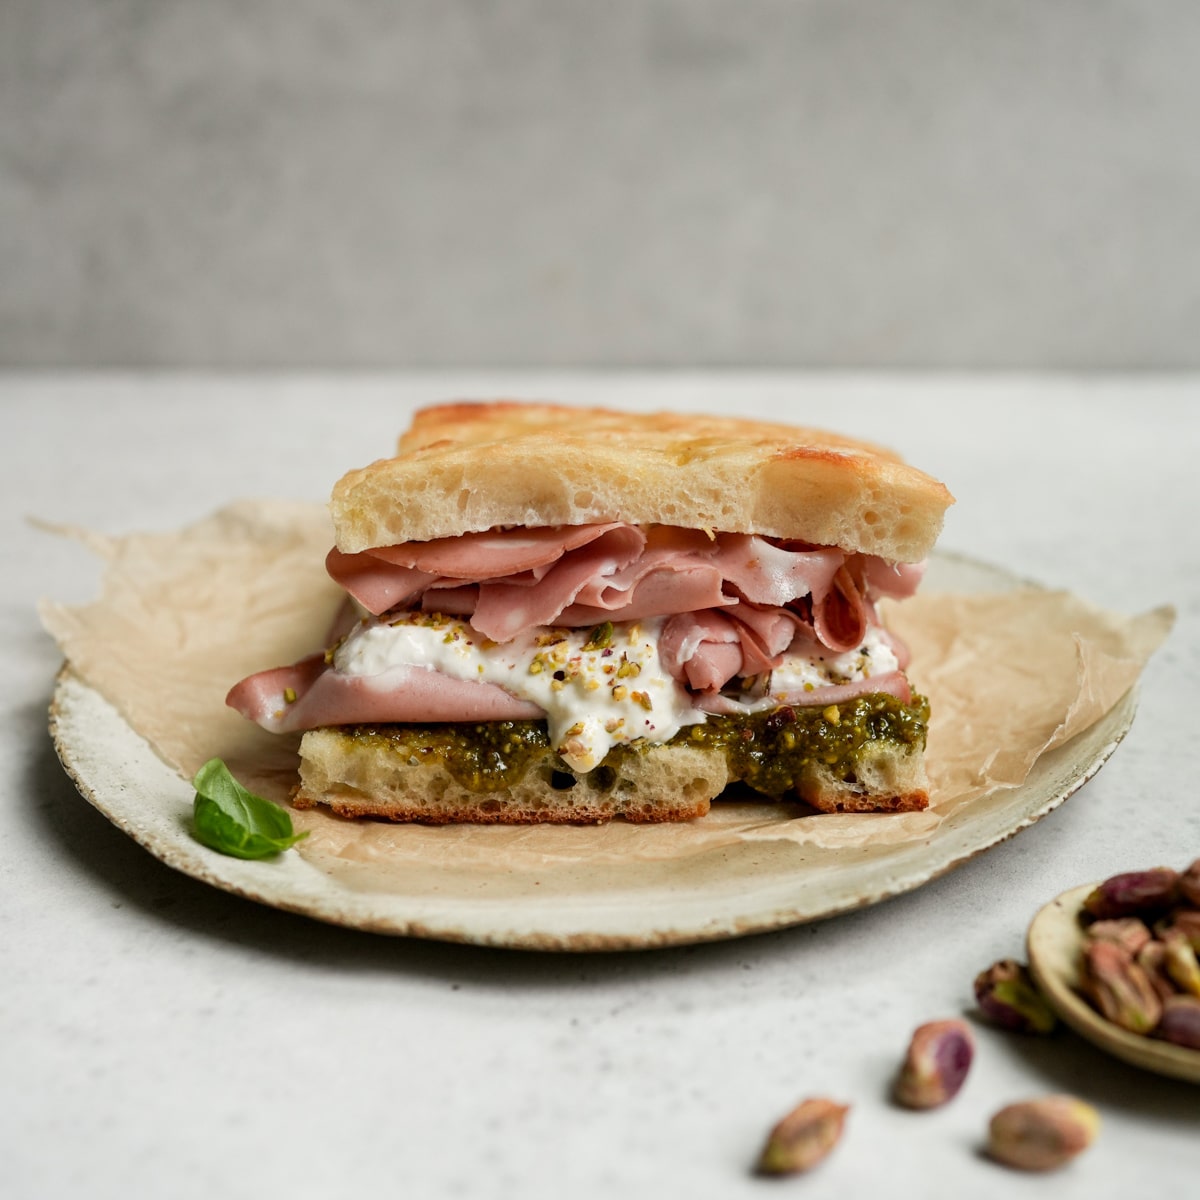 Mortadella Sandwich - With Burrata and Pistachio Pesto! - Pina Bresciani